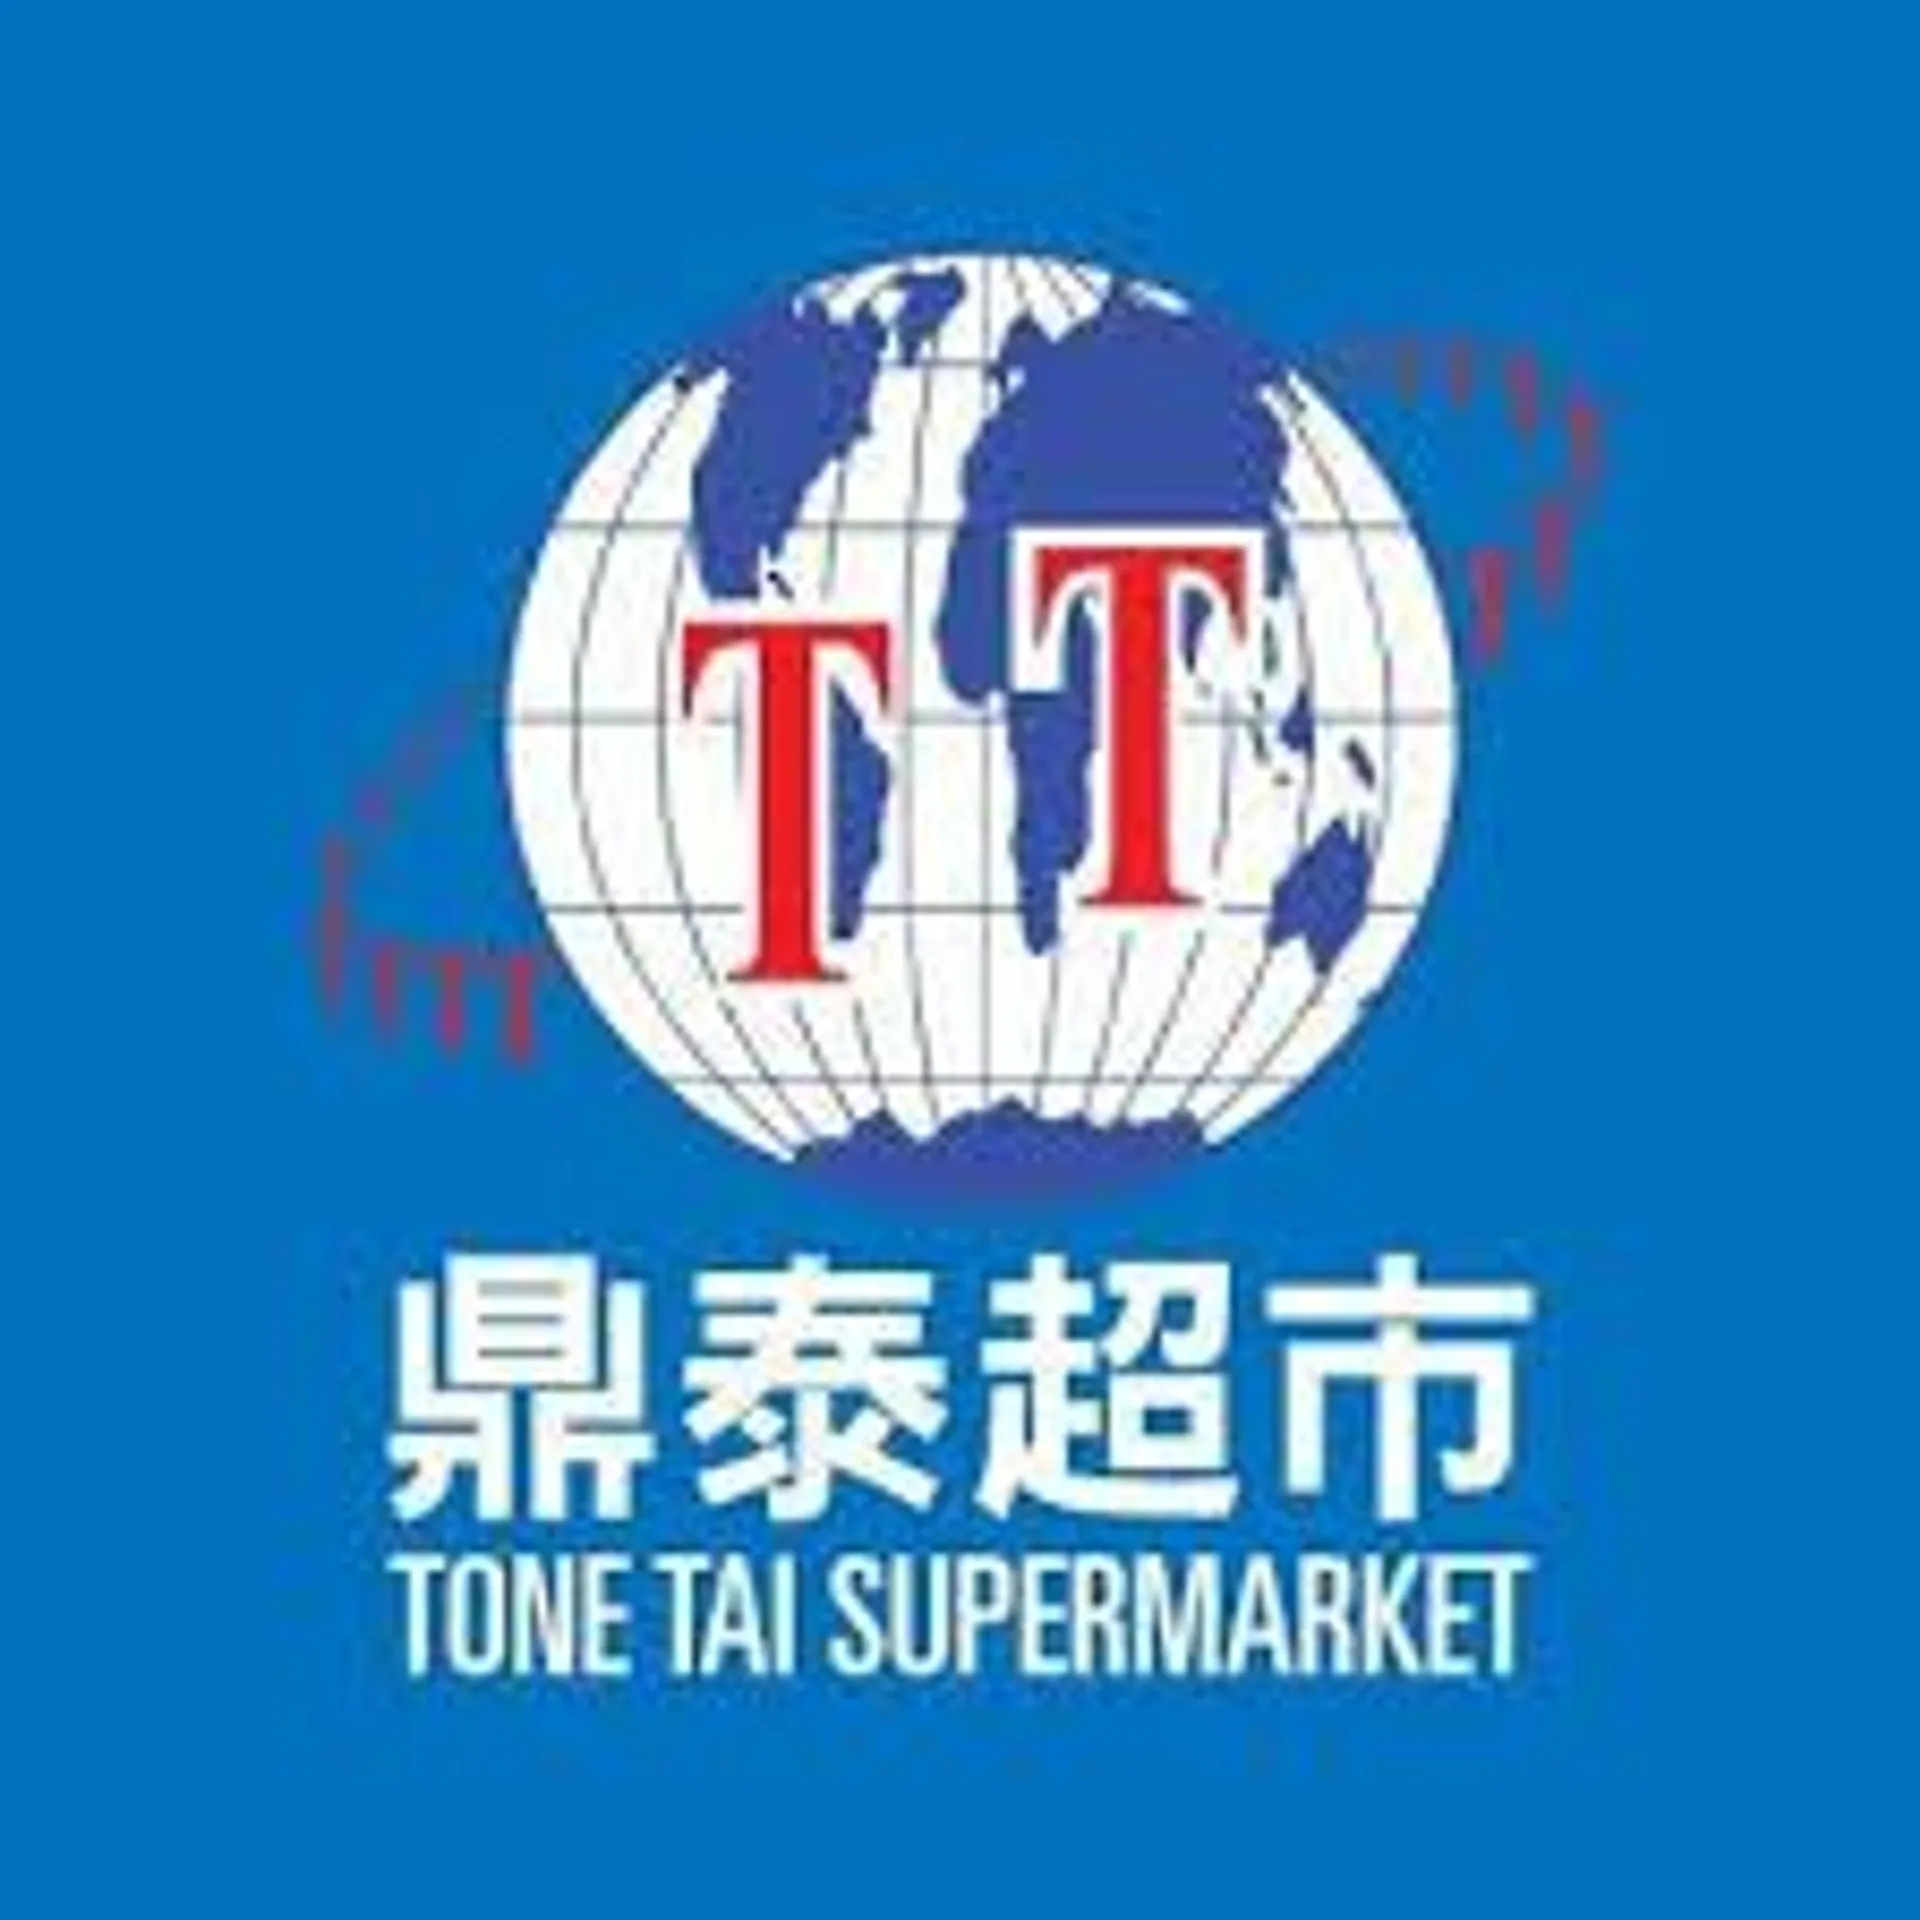 TONE TAI SUPERMARKET logo